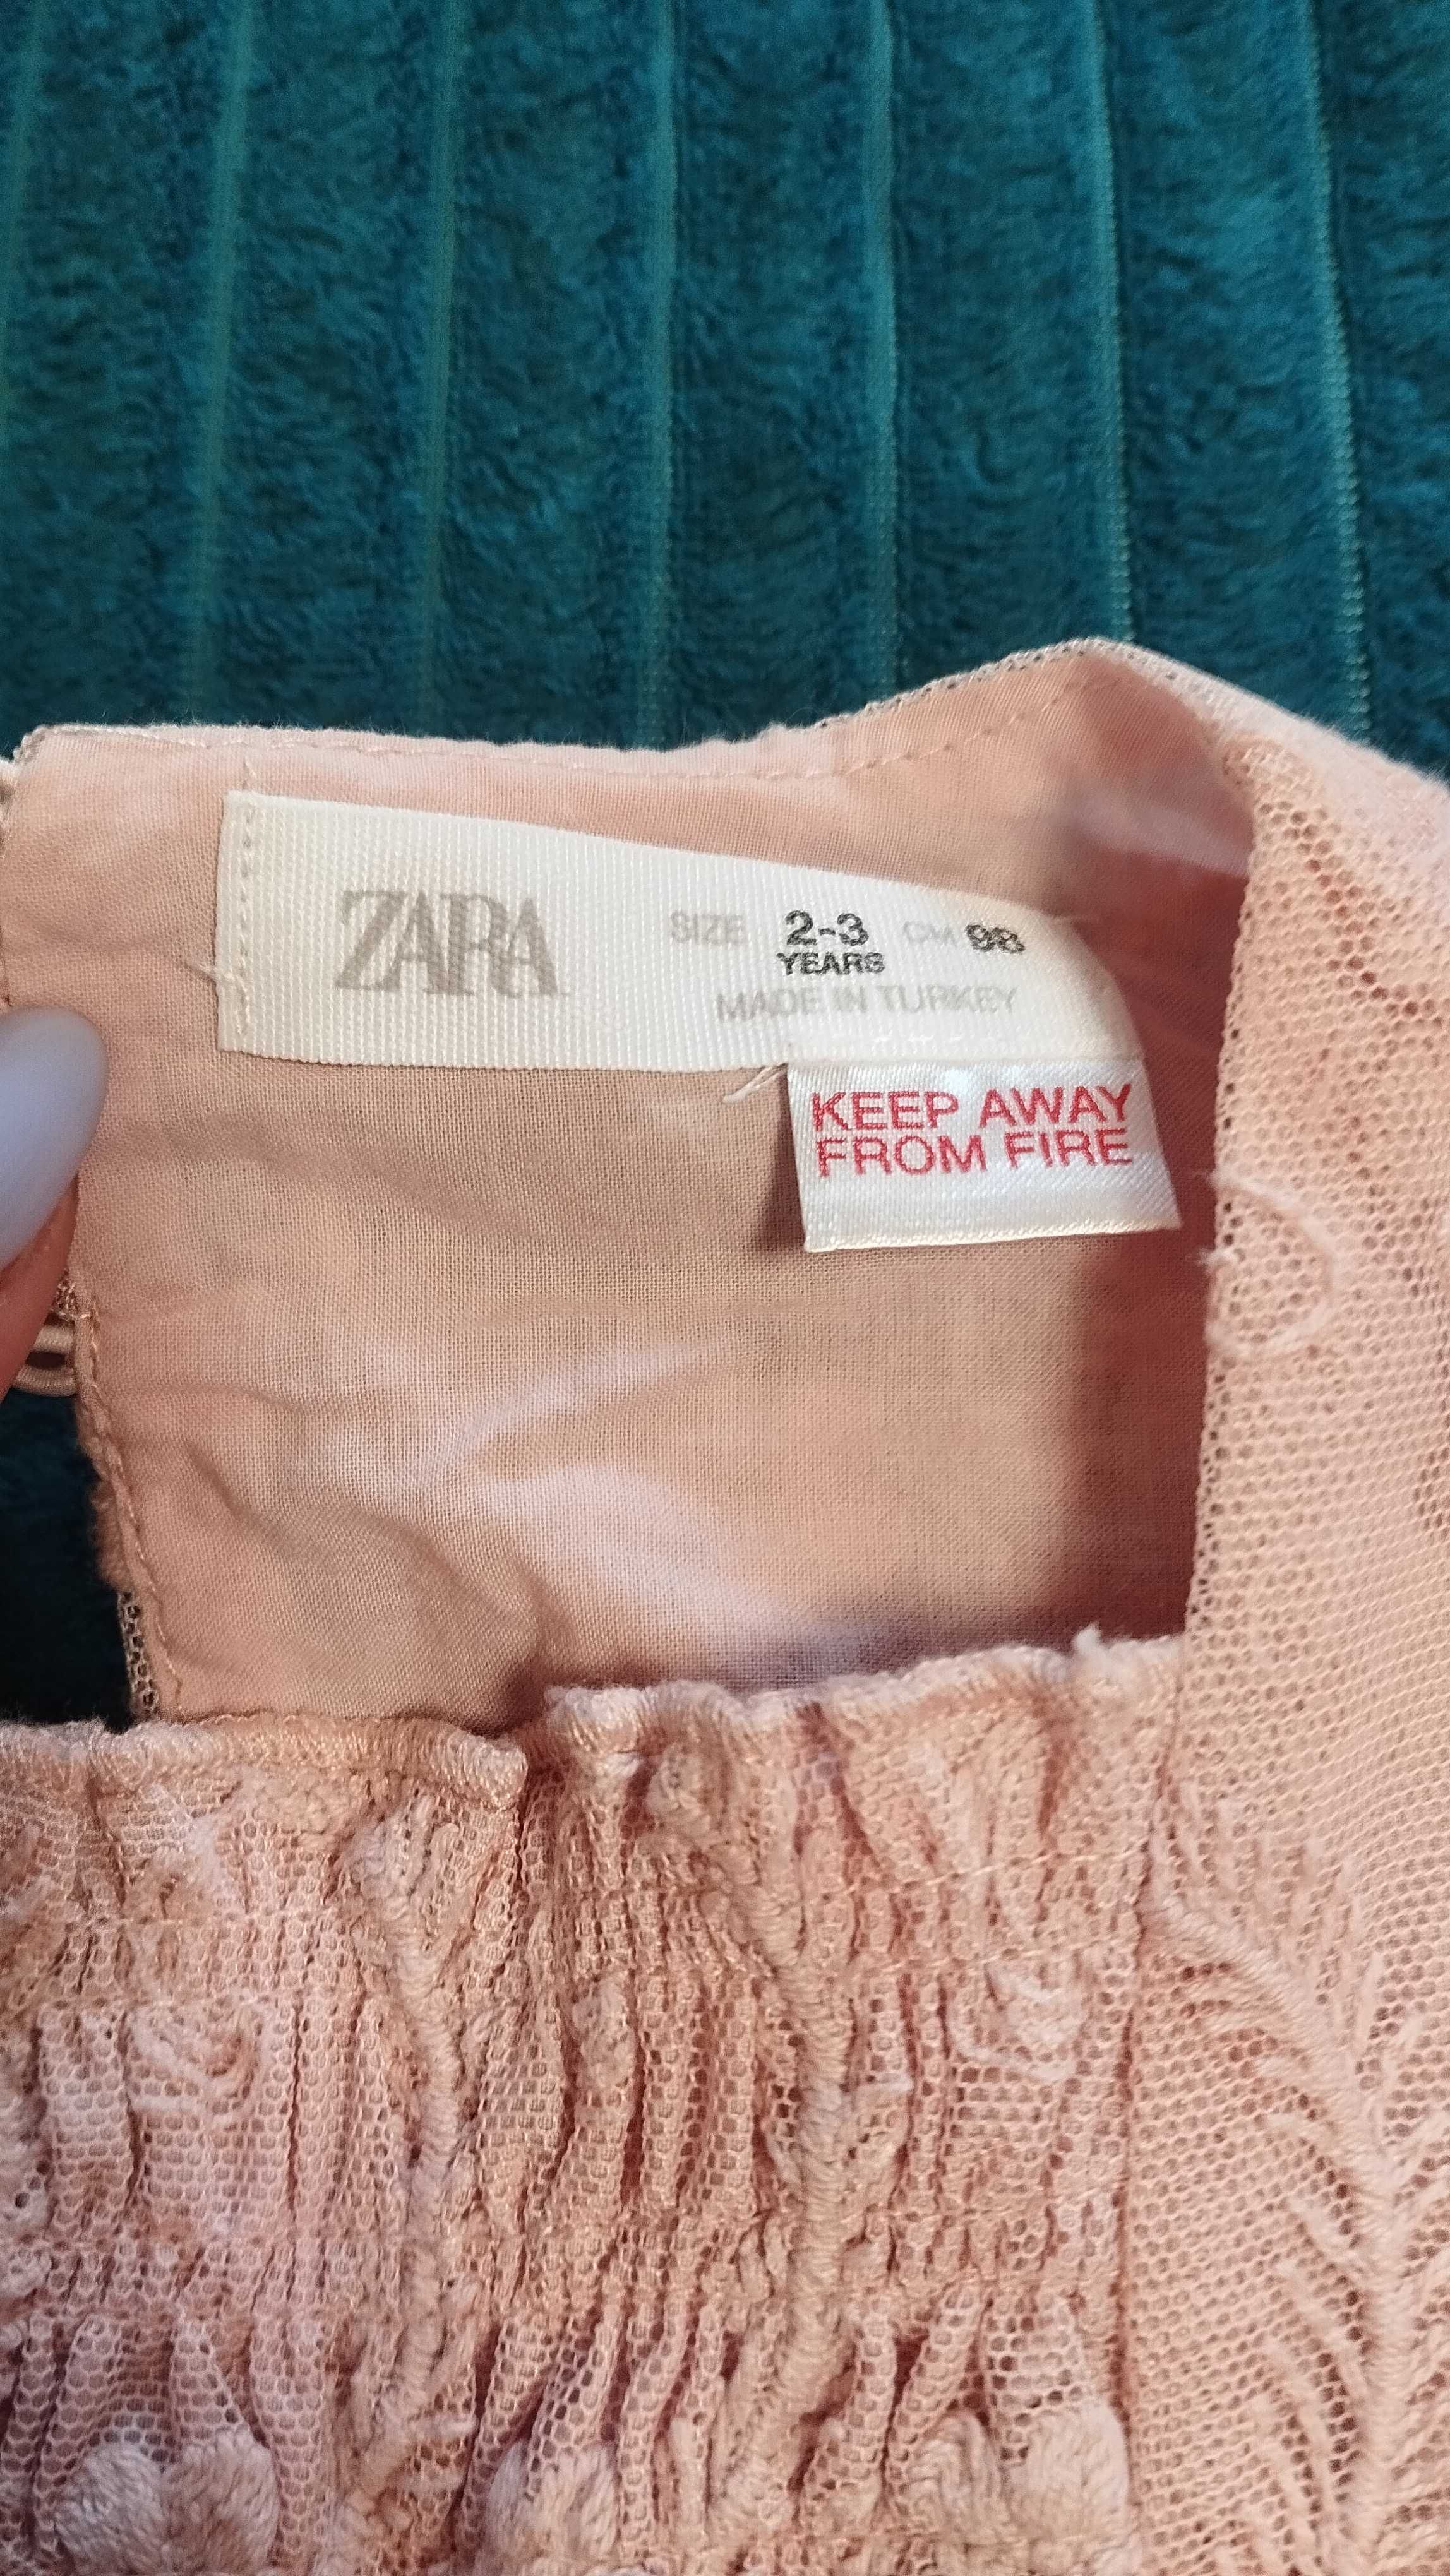 Плаття для дівчинки Zara